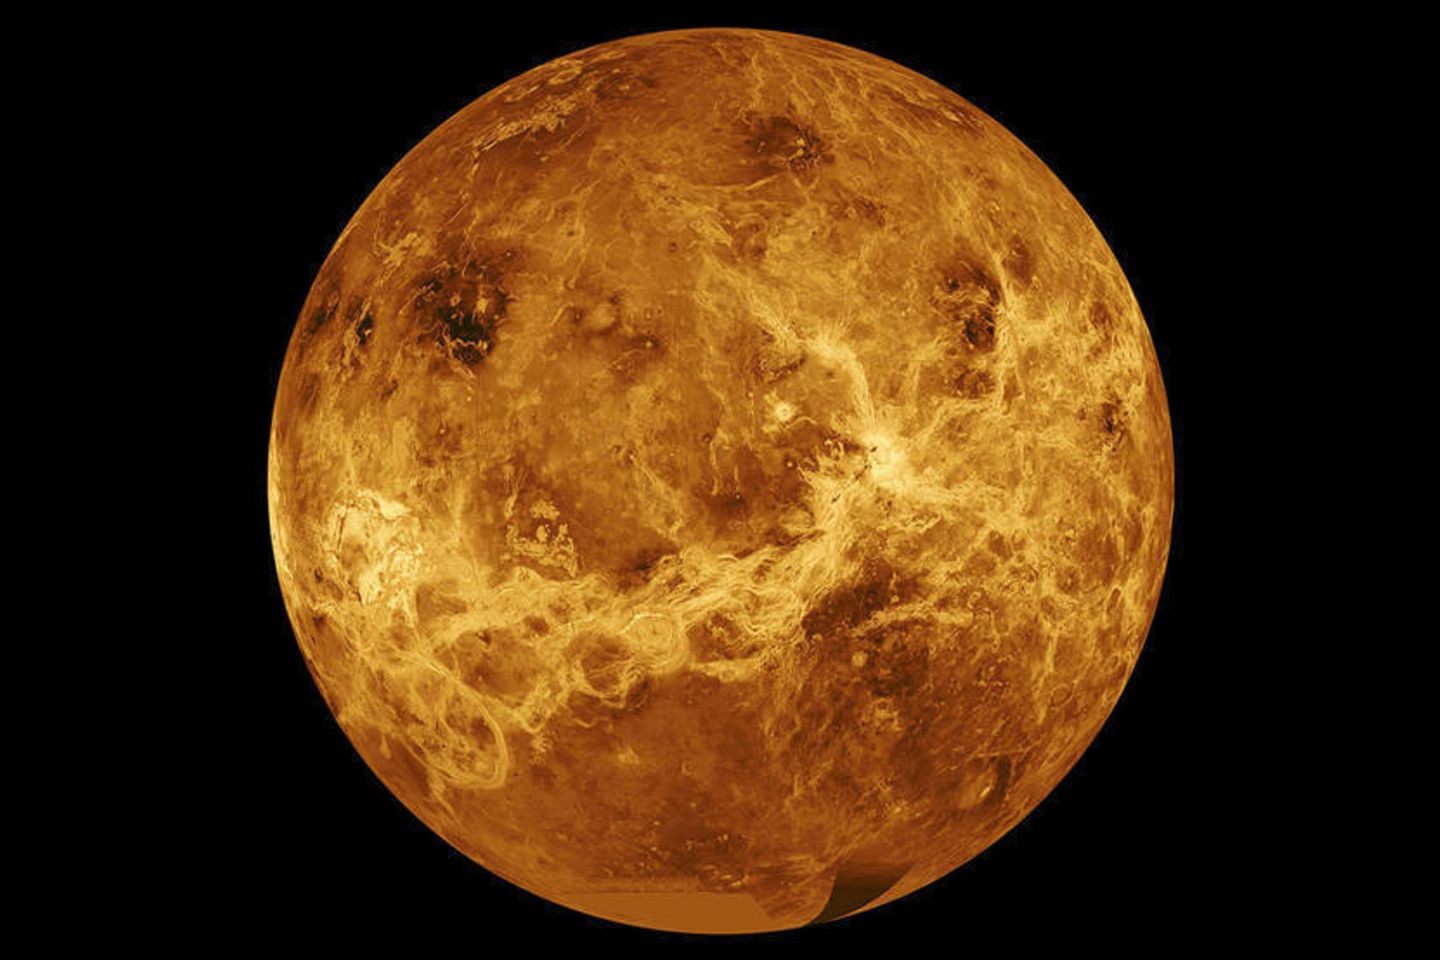 Diese Aufnahme, mit speziellen Geräten erstellt und am Computer montiert, zeigt die heiße Oberfläche der Venus. Dort herrschen Temperaturen um die 450 Grad Celsius. In der Realität verschleiern Wolken und eine dichte, trübe Atmosphäre die Sicht